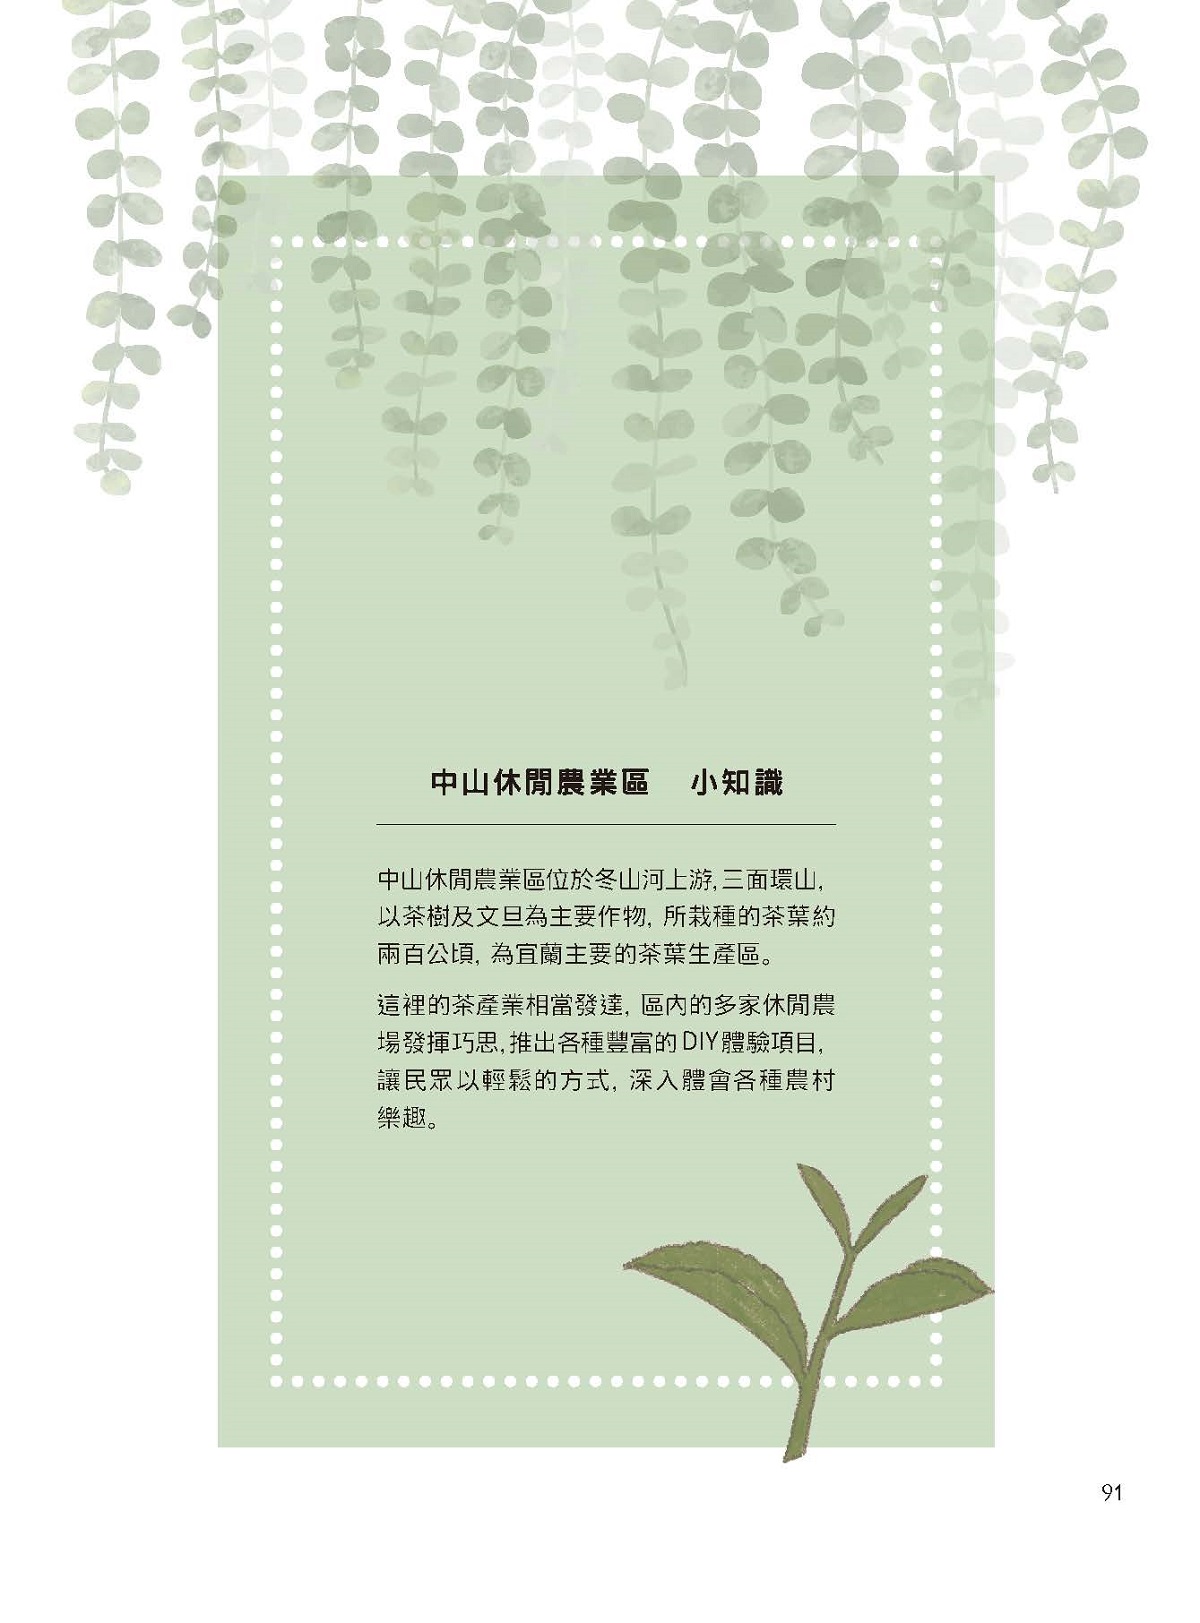 「五彩繽紛任體驗」—搖滾的綠茶—星源茶園（Xing Yuan Tea Farm）-8